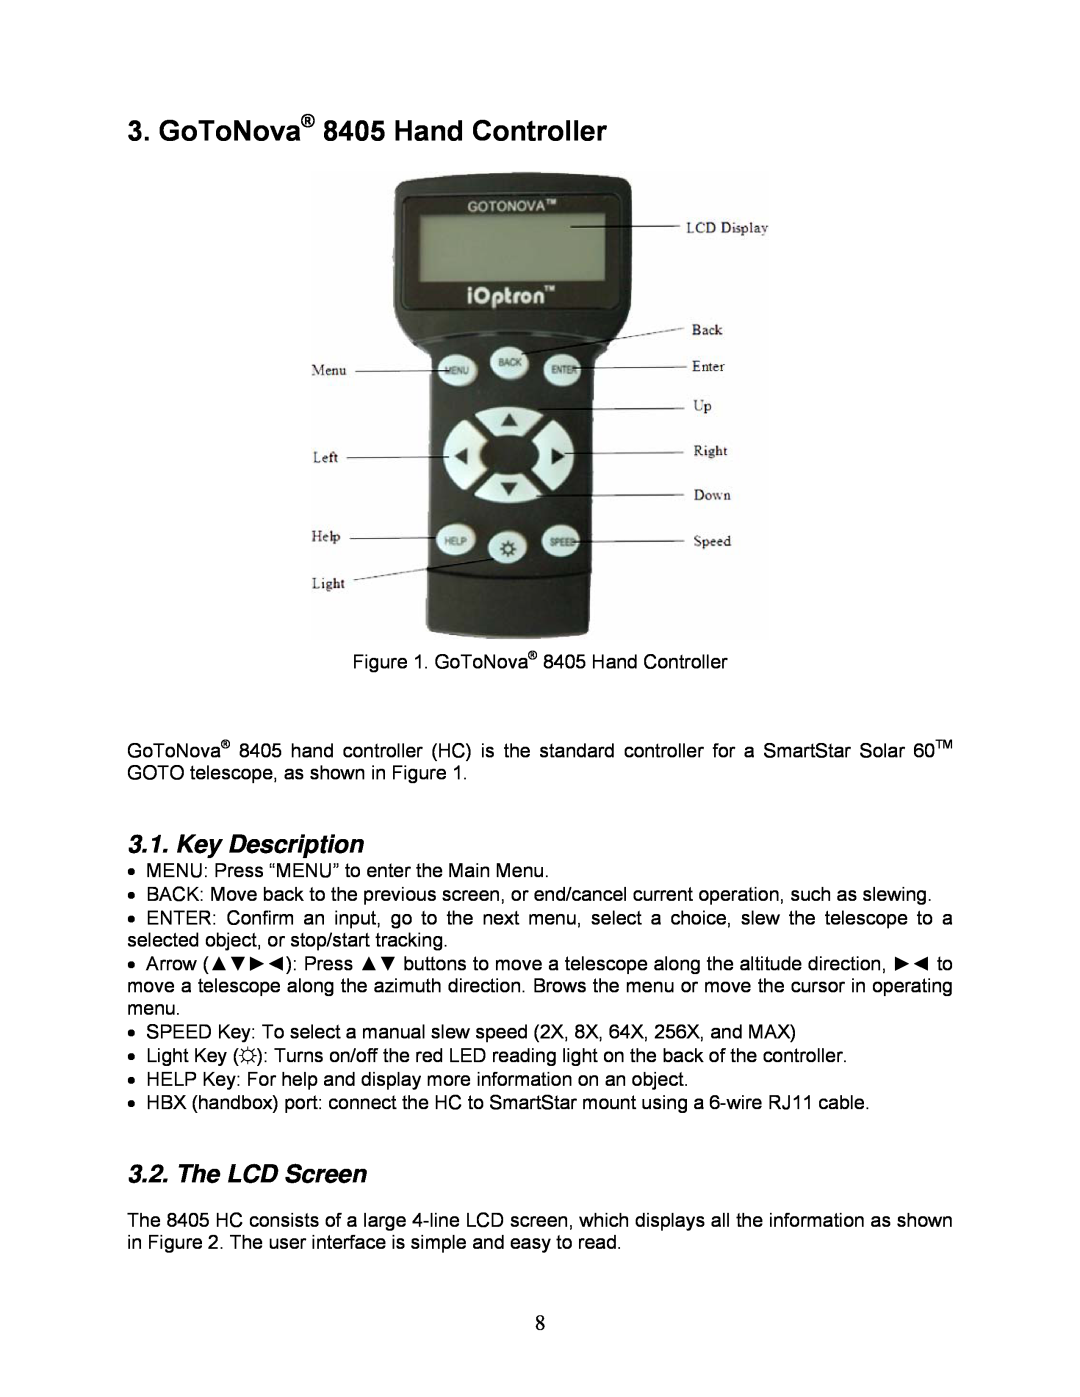 iOptron 8506, 8507 instruction manual GoToNova 8405 Hand Controller, Key Description, The LCD Screen 